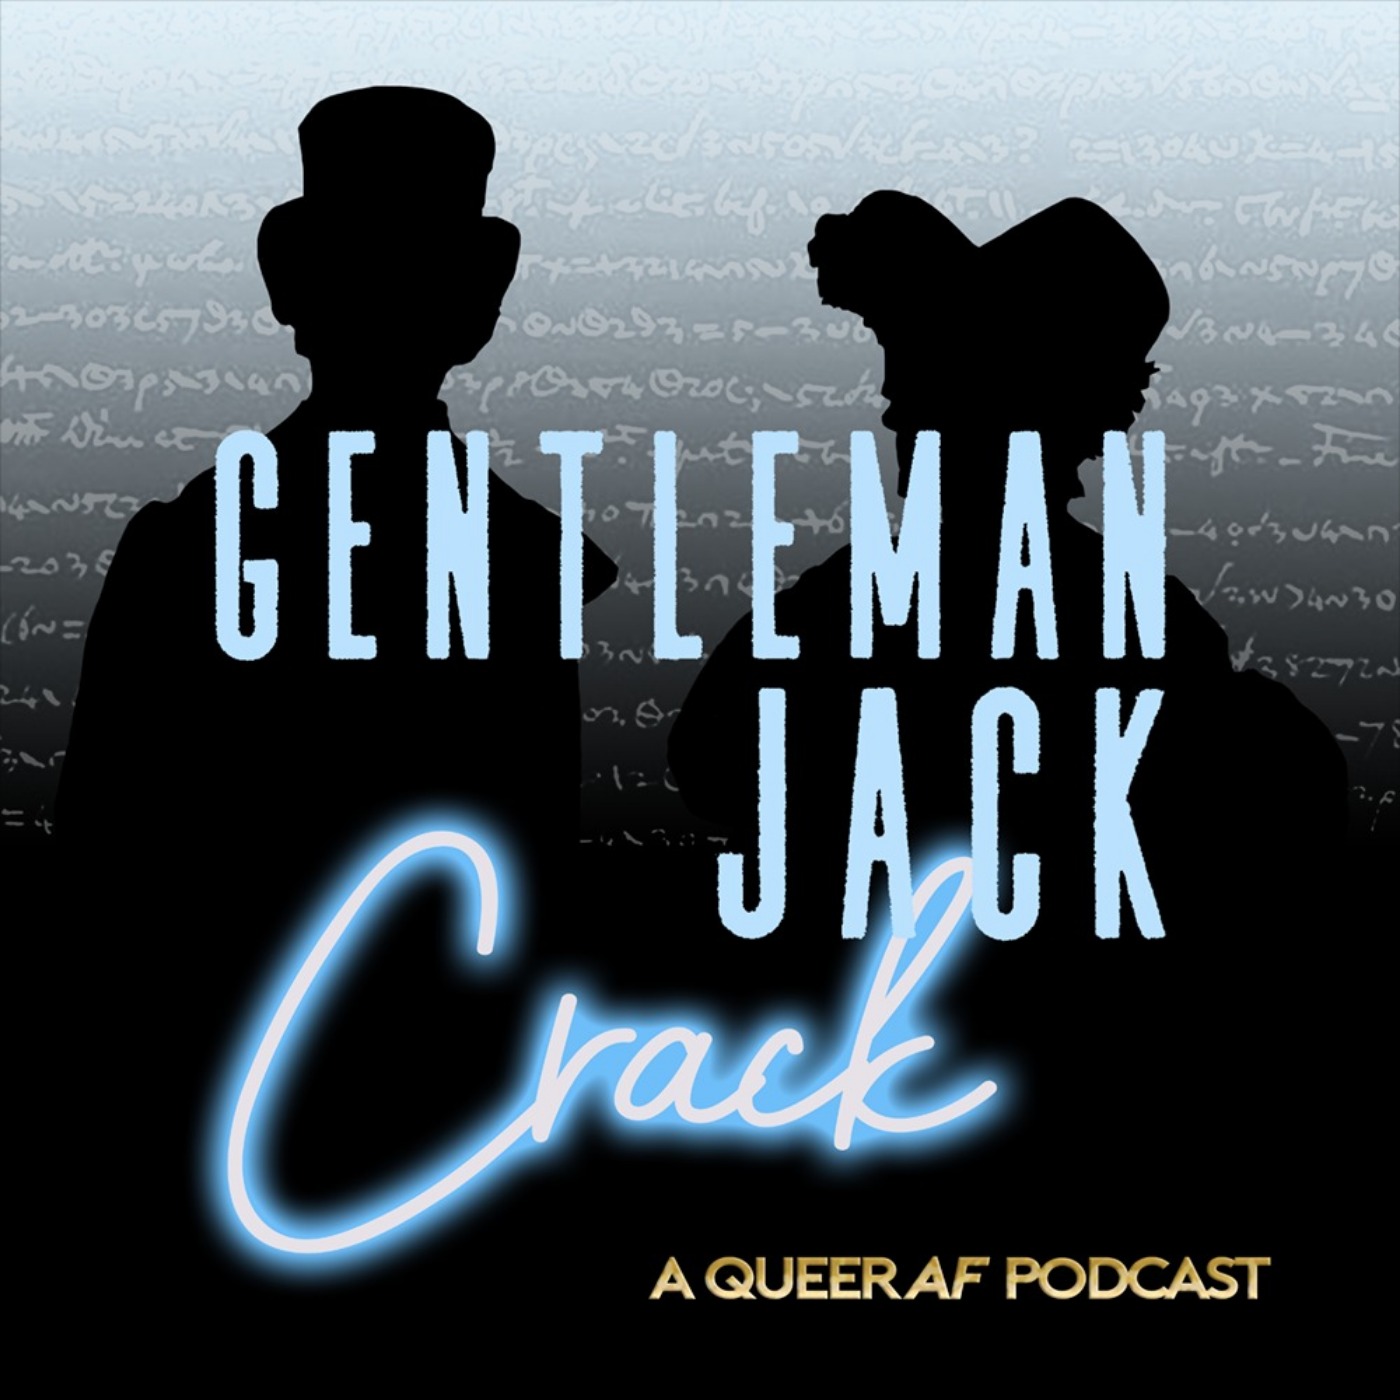 Gentleman Jack Crack - "Do Ladies Do That?" Part II